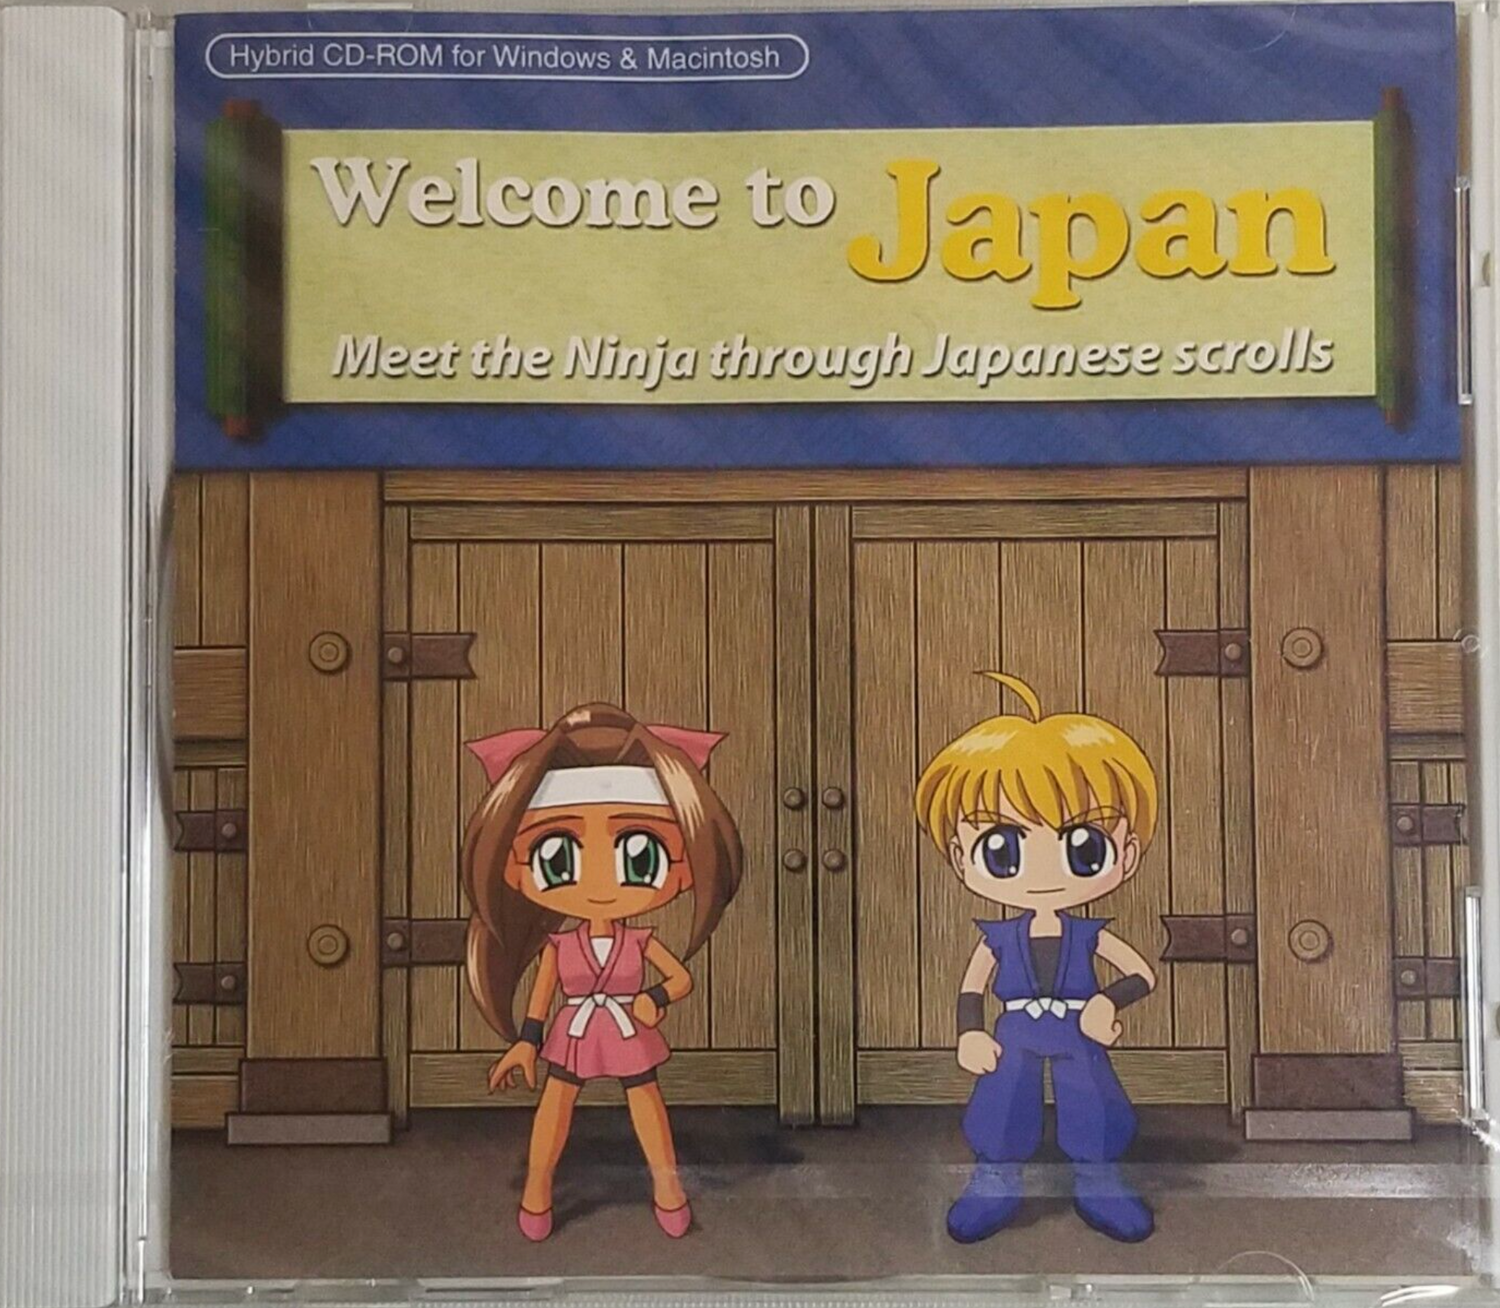 Bienvenido a Japón: Conoce al Ninja a través del CD ROM de los pergaminos japoneses